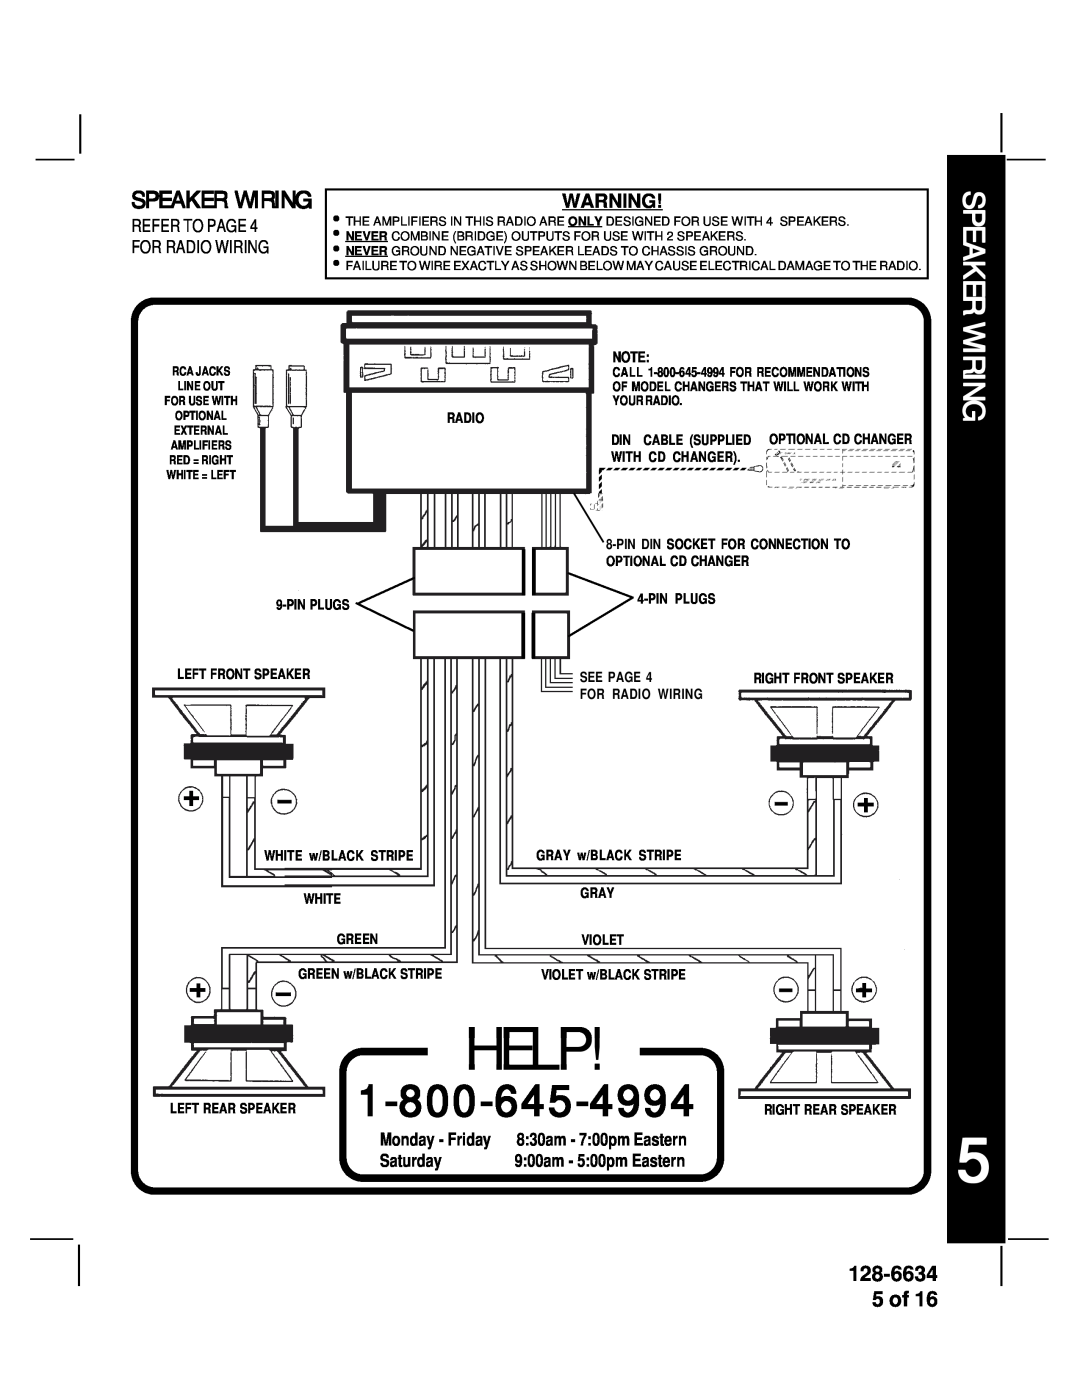 Audiovox AV-428V manual Speaker Wiring, 128-6634 5 of, Monday - Friday, Saturday, Help 